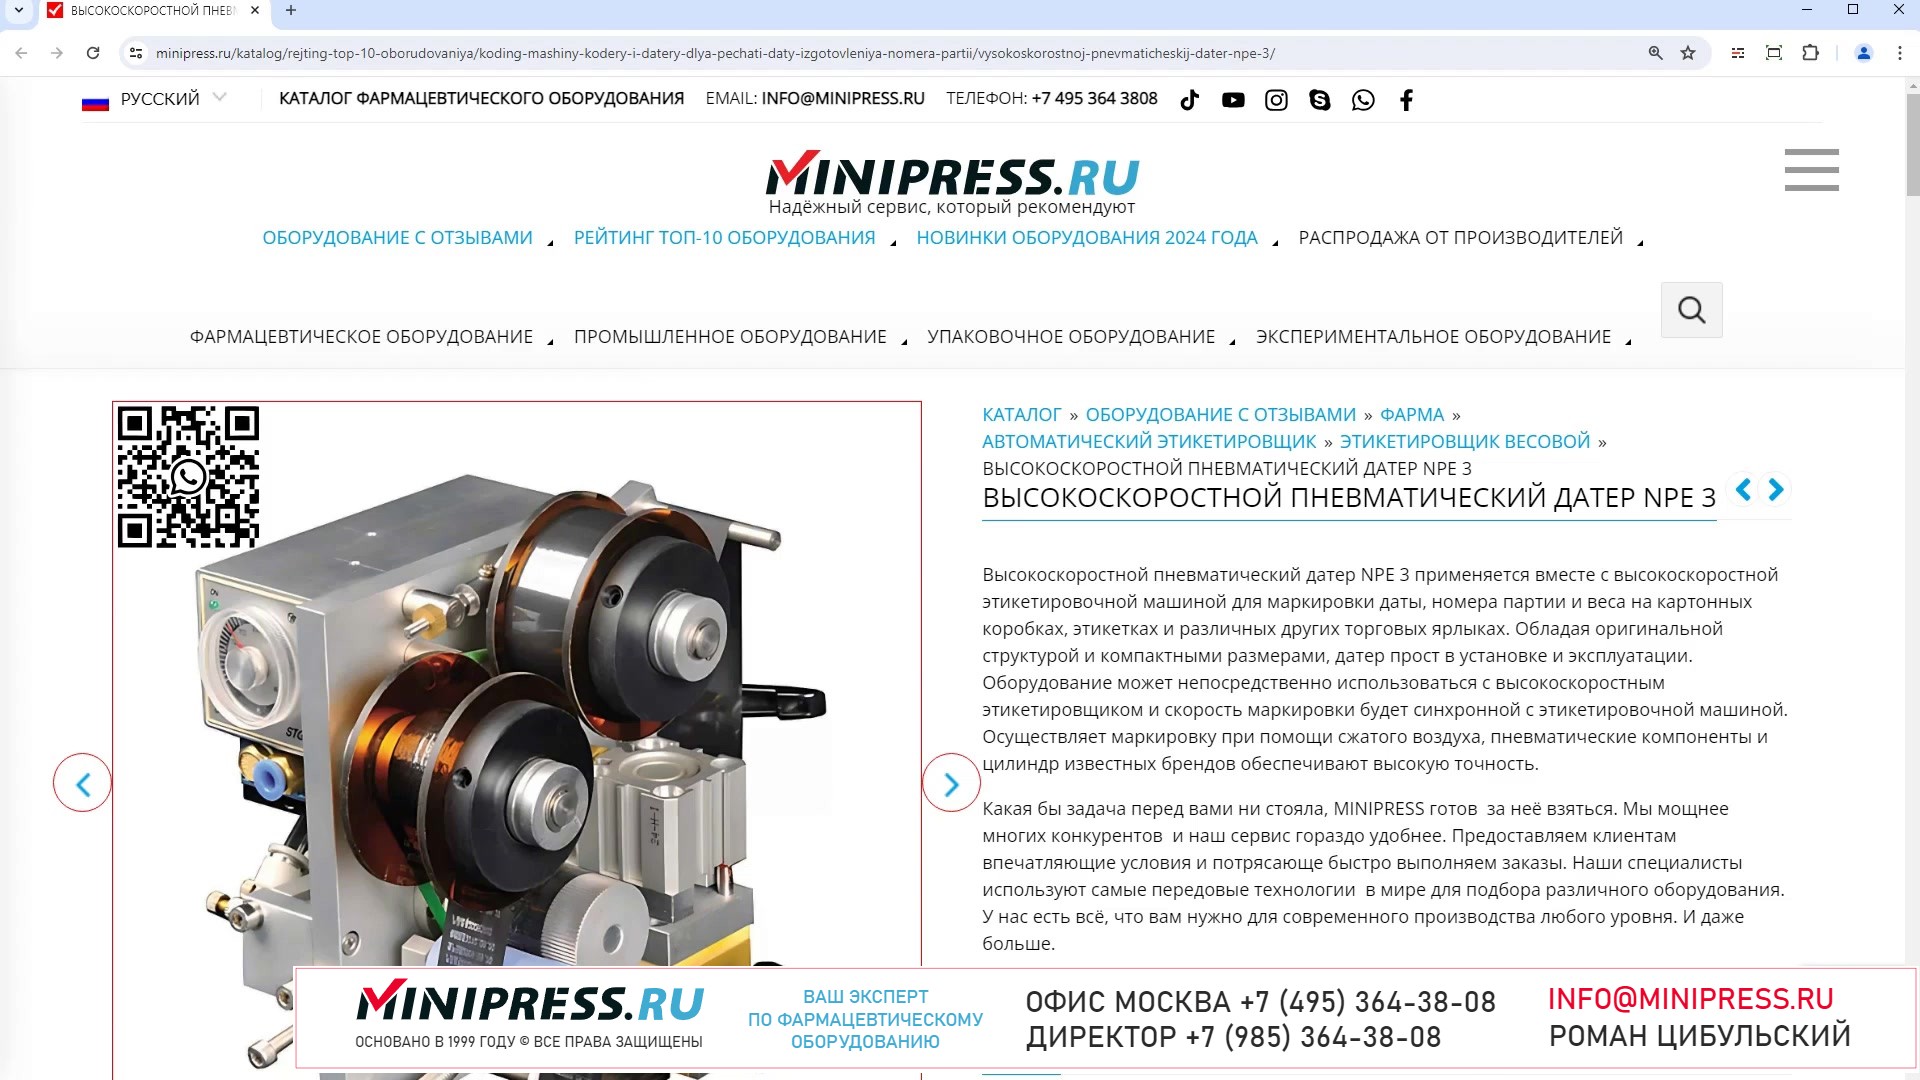 Minipress.ru Высокоскоростной пневматический датер NPE 3